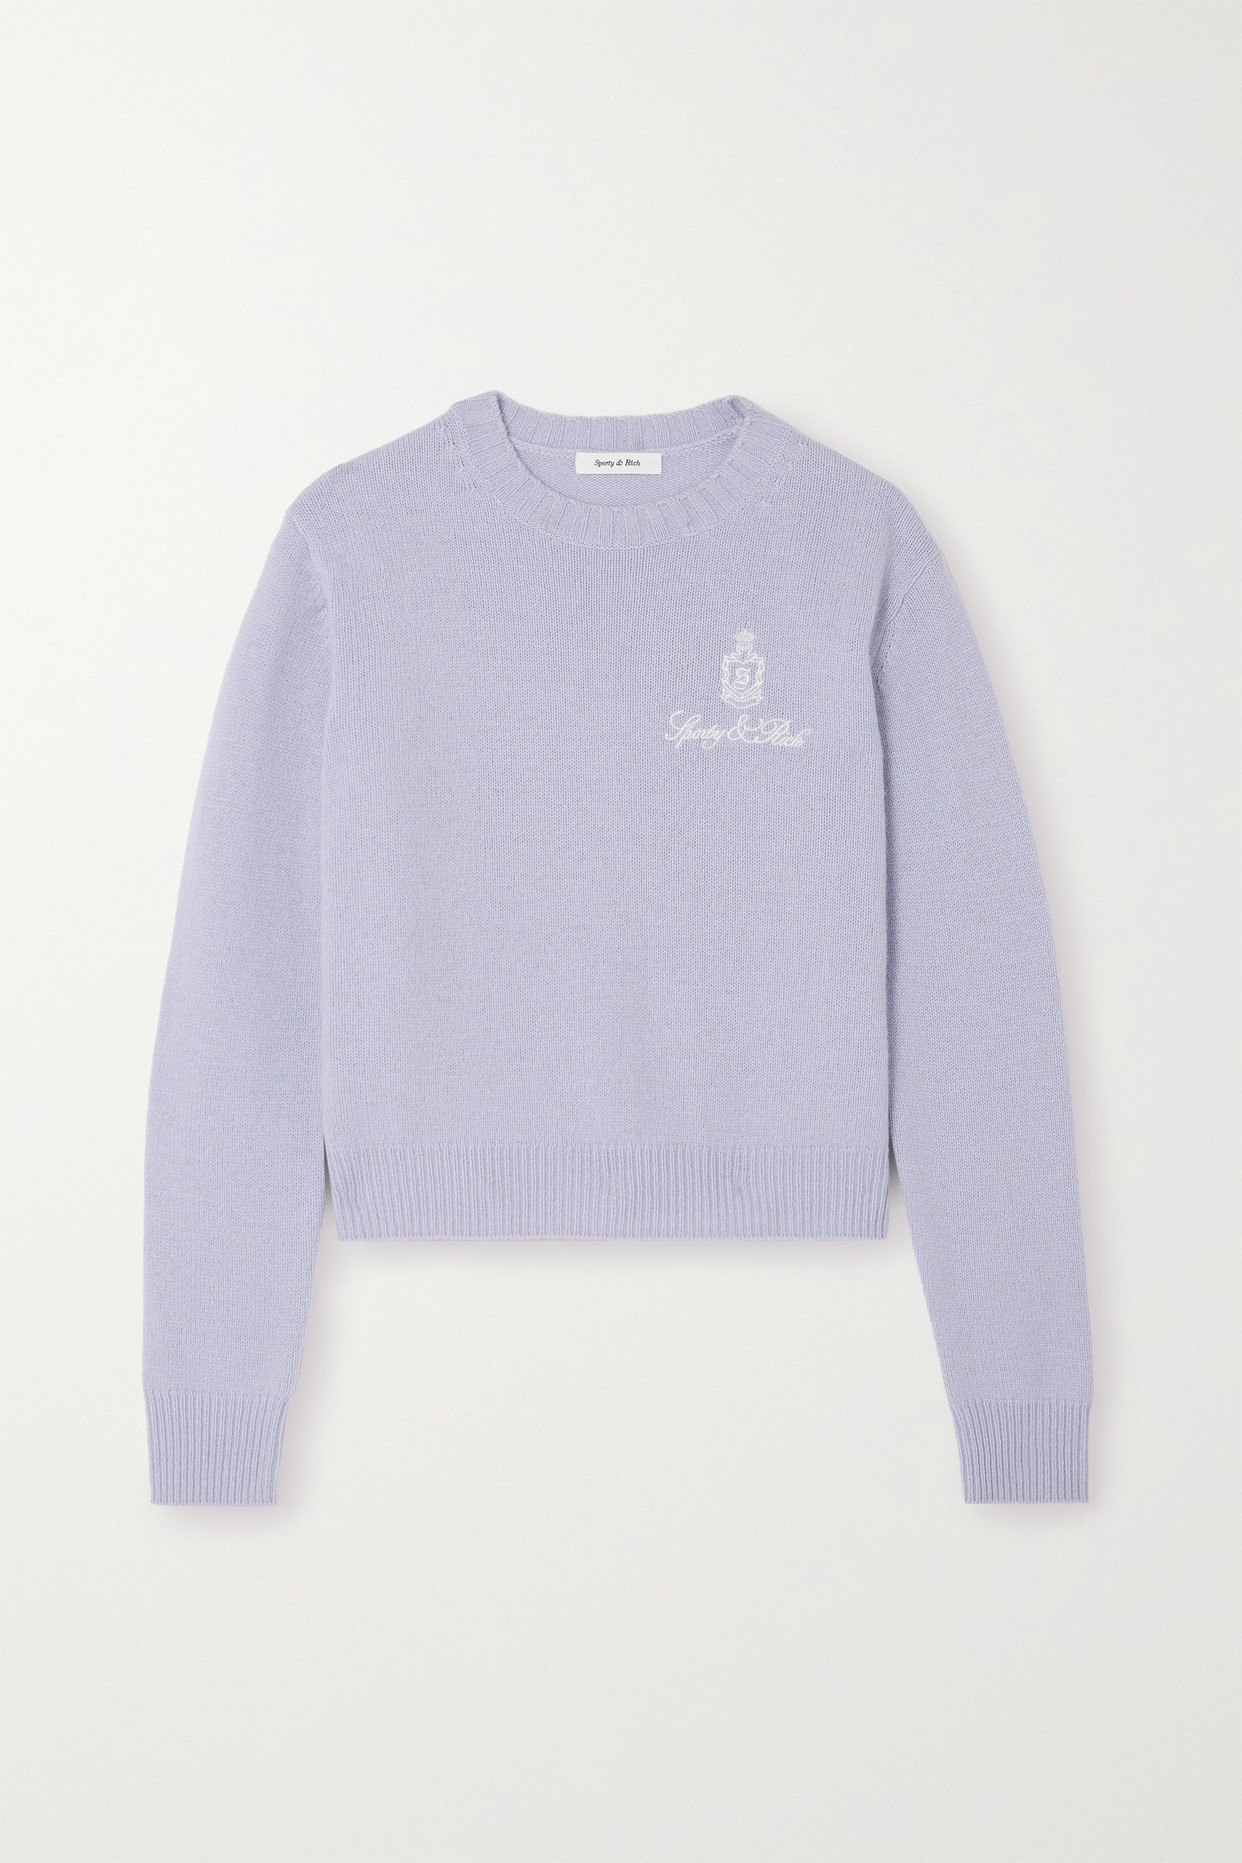 Vendome Embroidered Cashmere Sweater